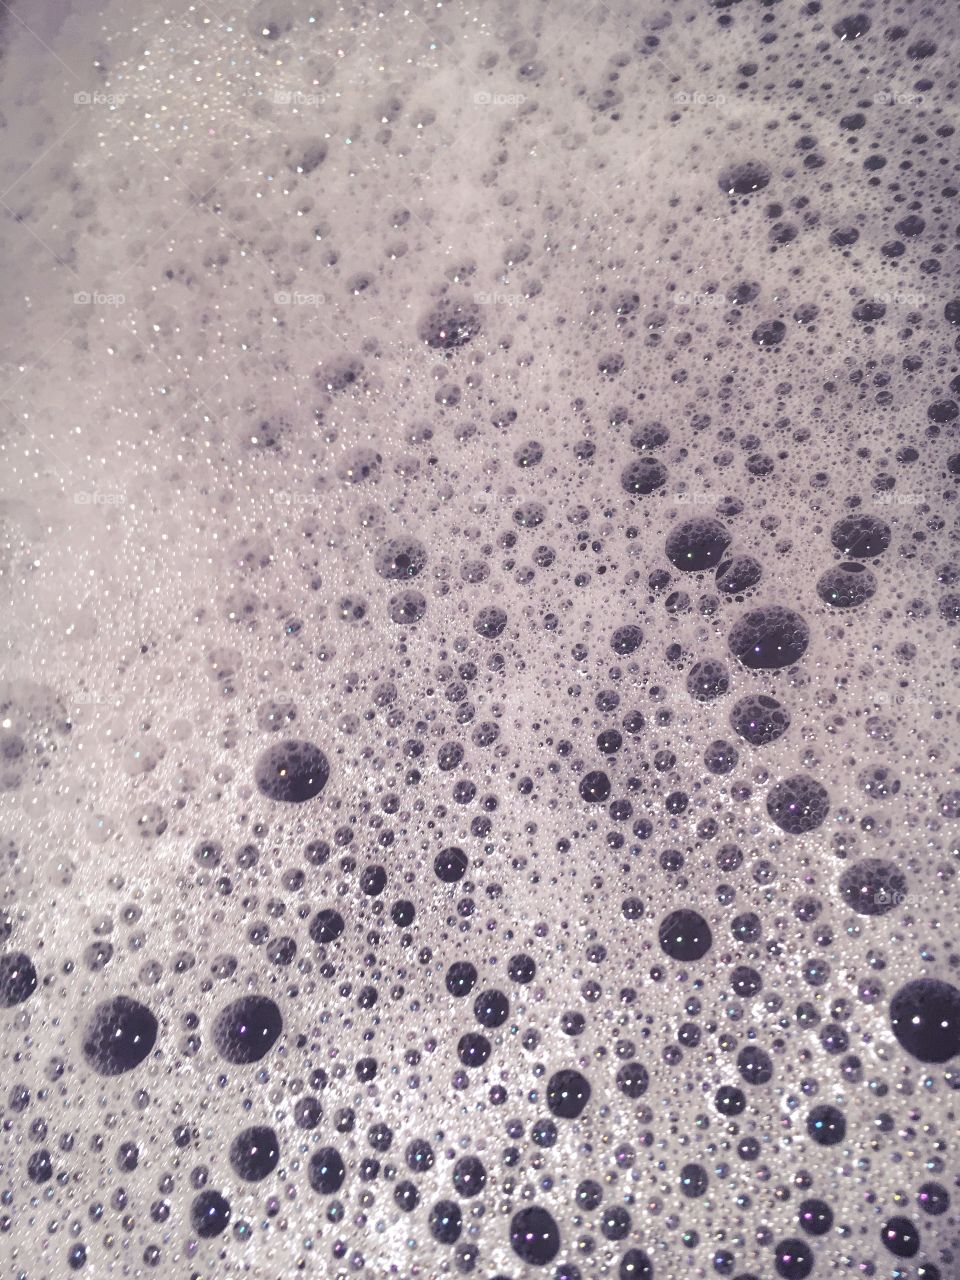 Sudsy Bubbles
